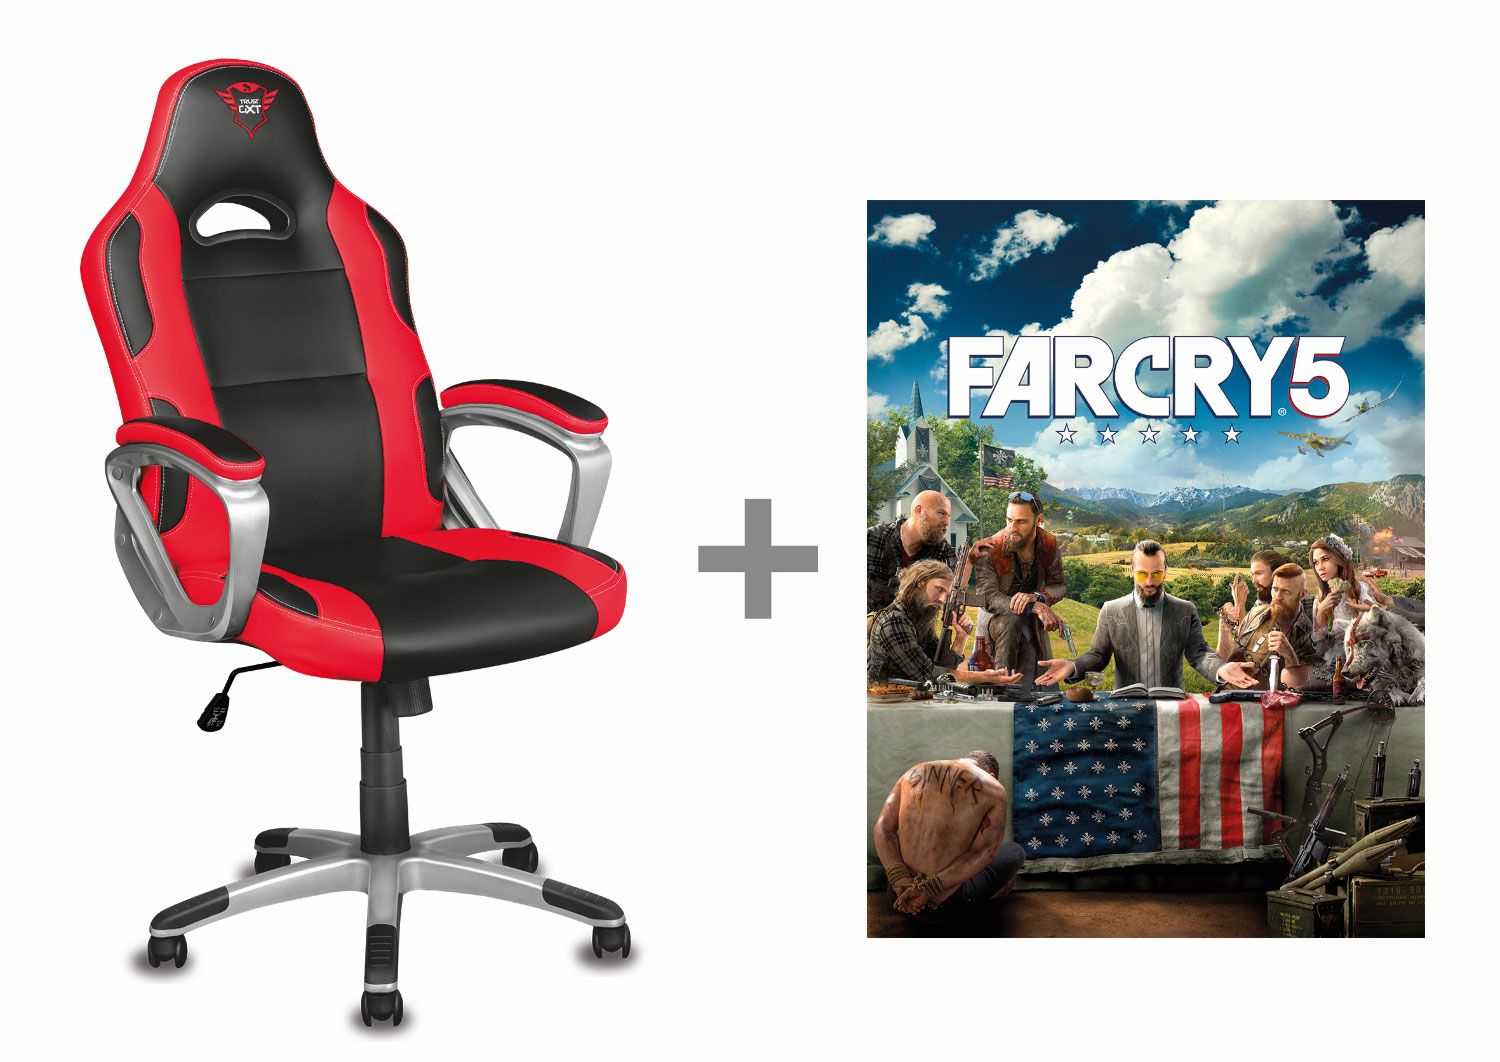 Vyhlášení soutěže s Trust o balíček s Far Cry 5 a o další ceny